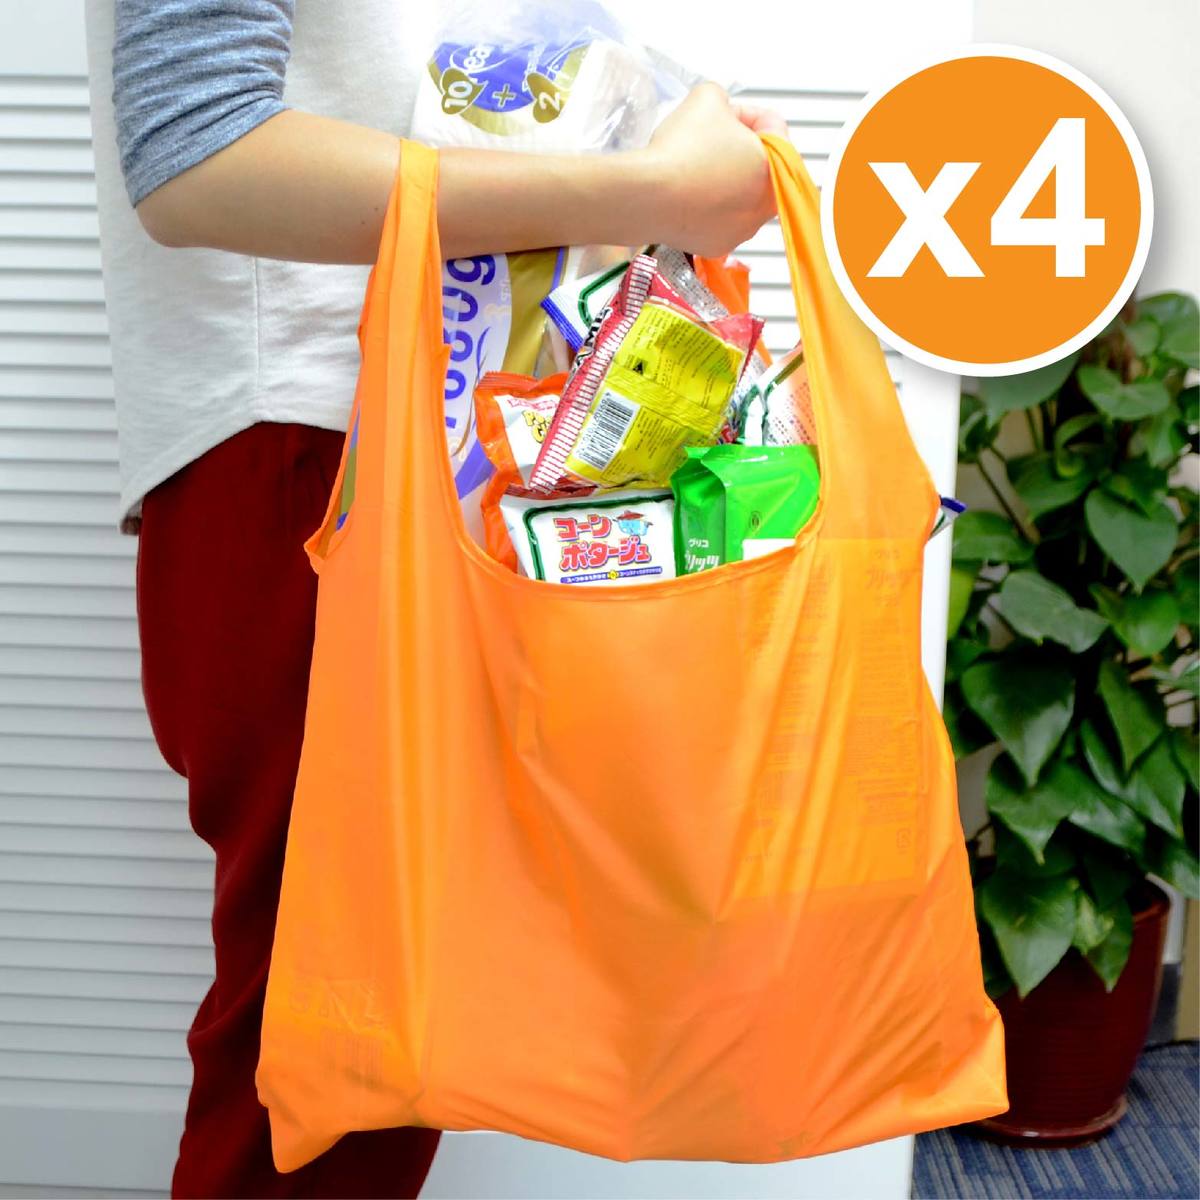 40cm特大超輕身尼龍摺疊環保購物袋 4個 (橙色)